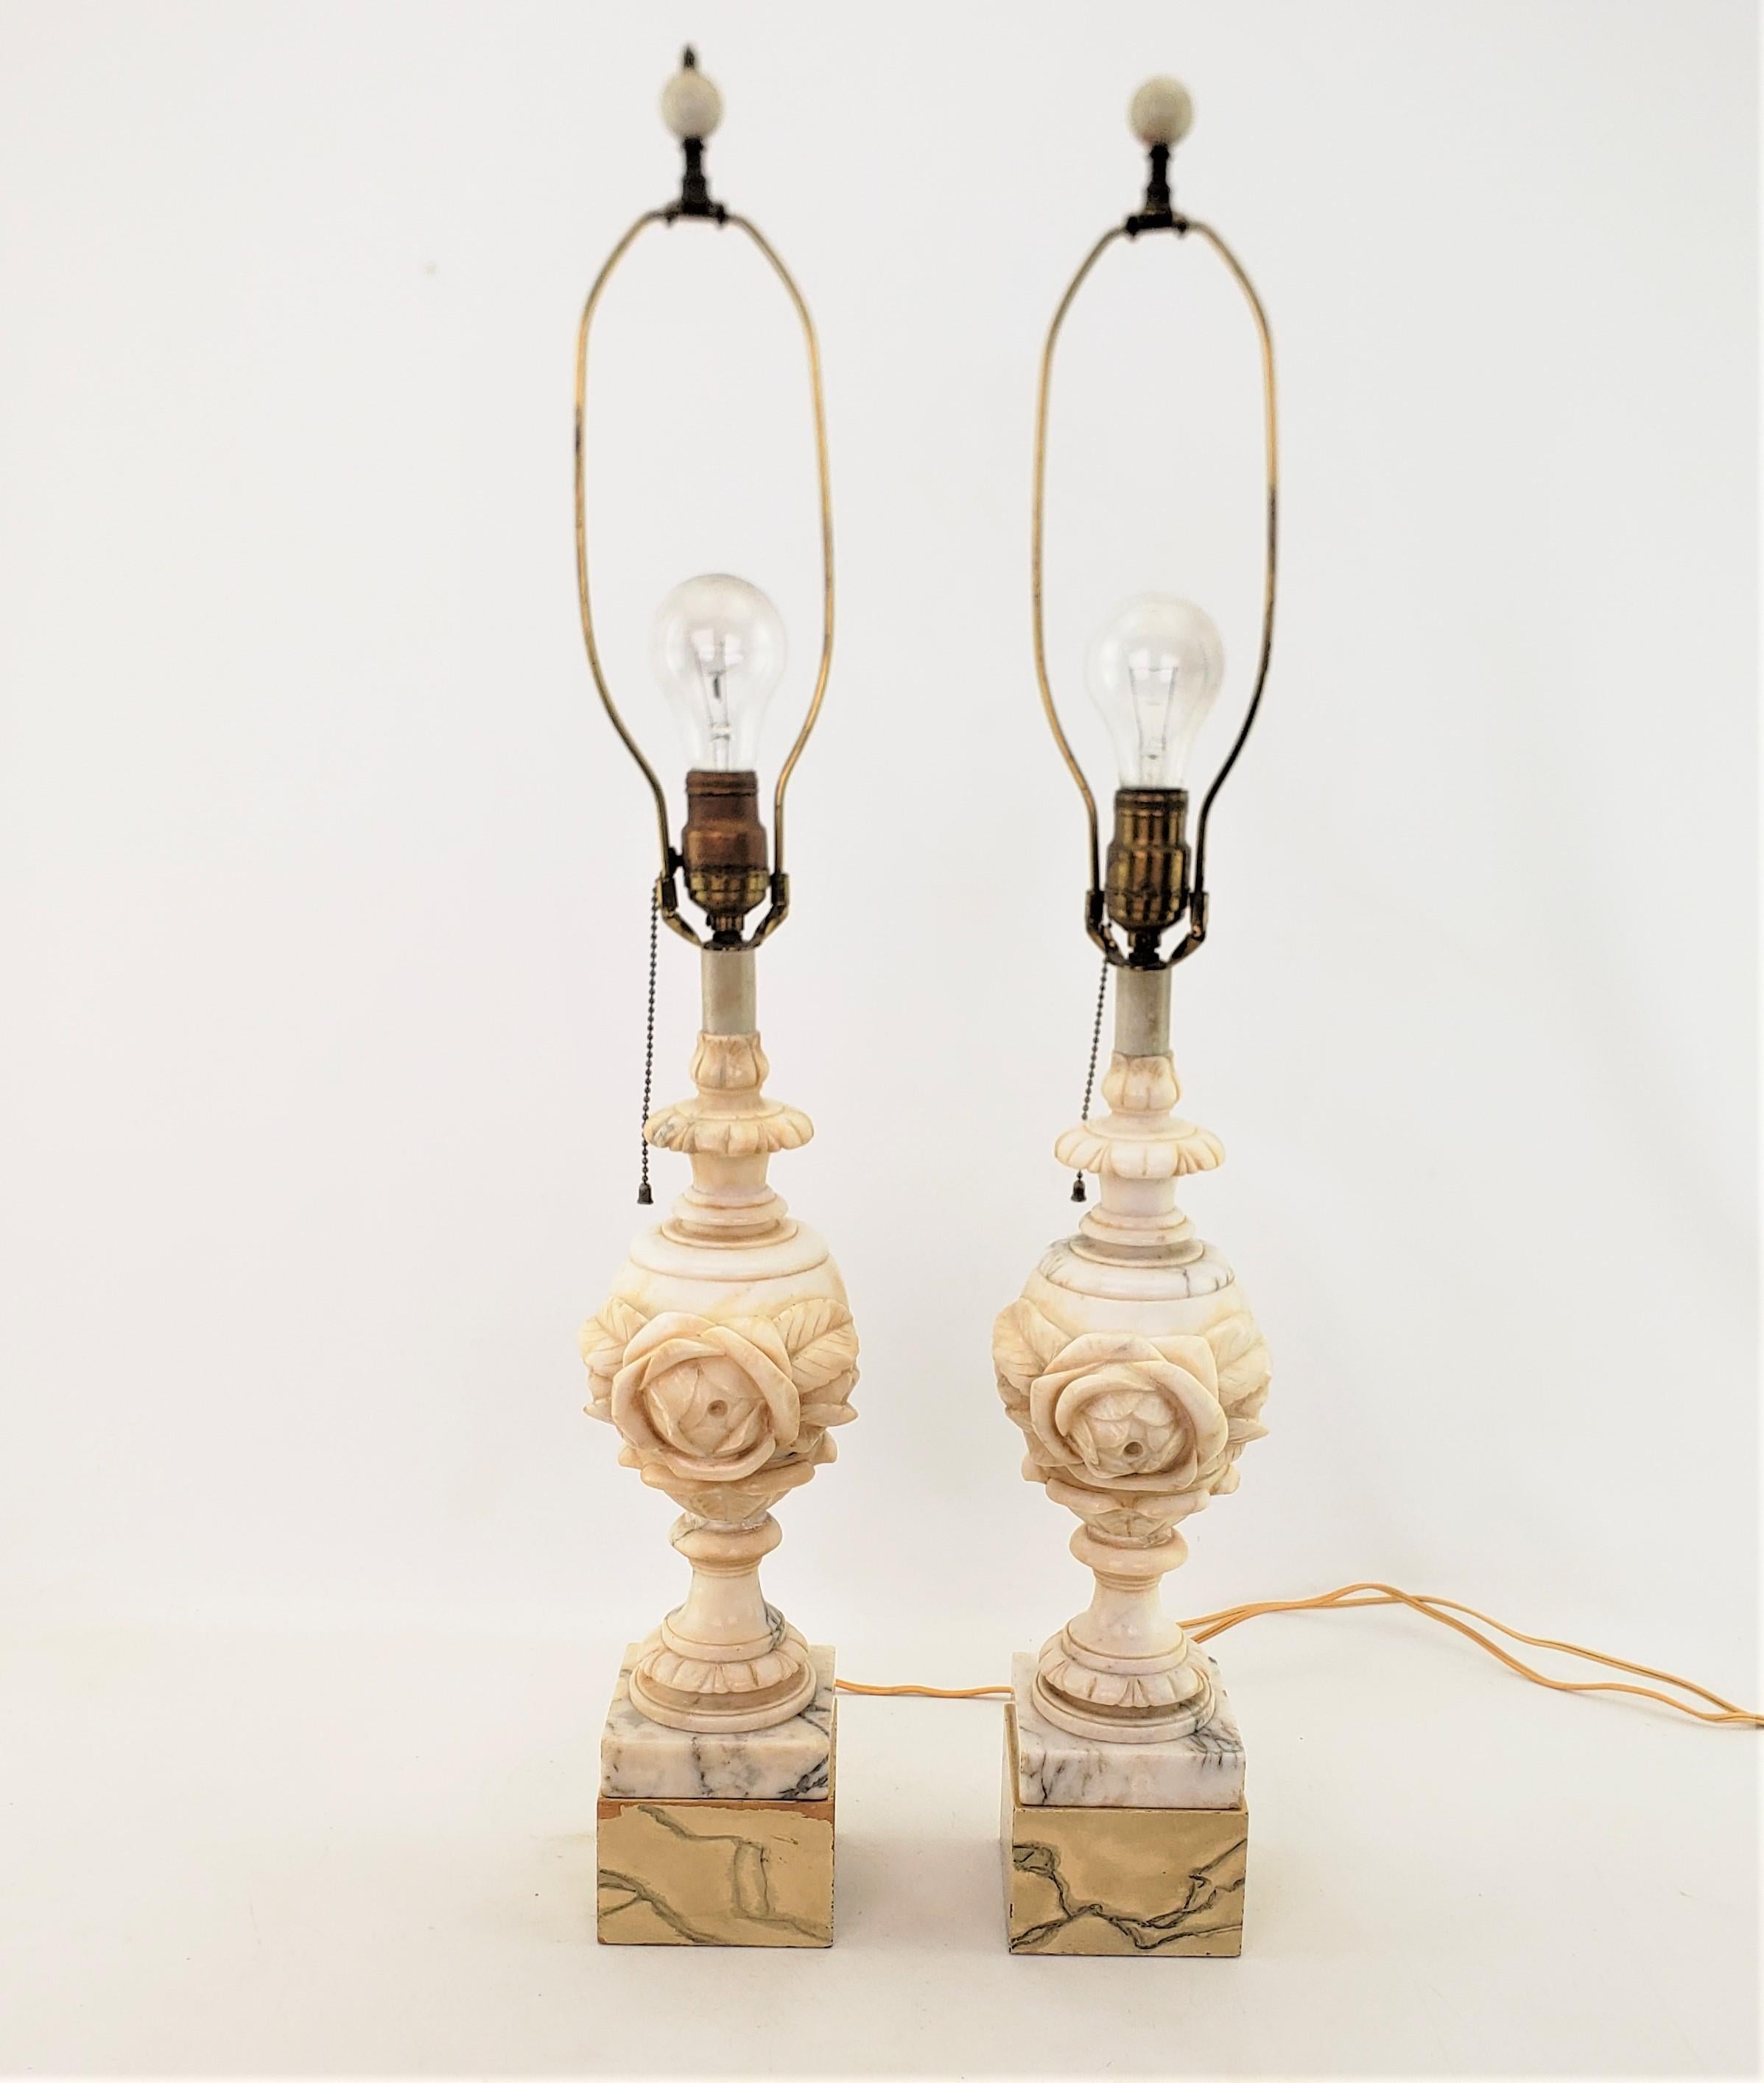 Cette paire de lampes anciennes n'est pas signée, mais on suppose qu'elle provient d'Italie et date d'environ 1920. Elle est réalisée dans un style néoclassique. Les lampes sont composées d'albâtre veiné avec des bases de blocs de bois ajoutées avec